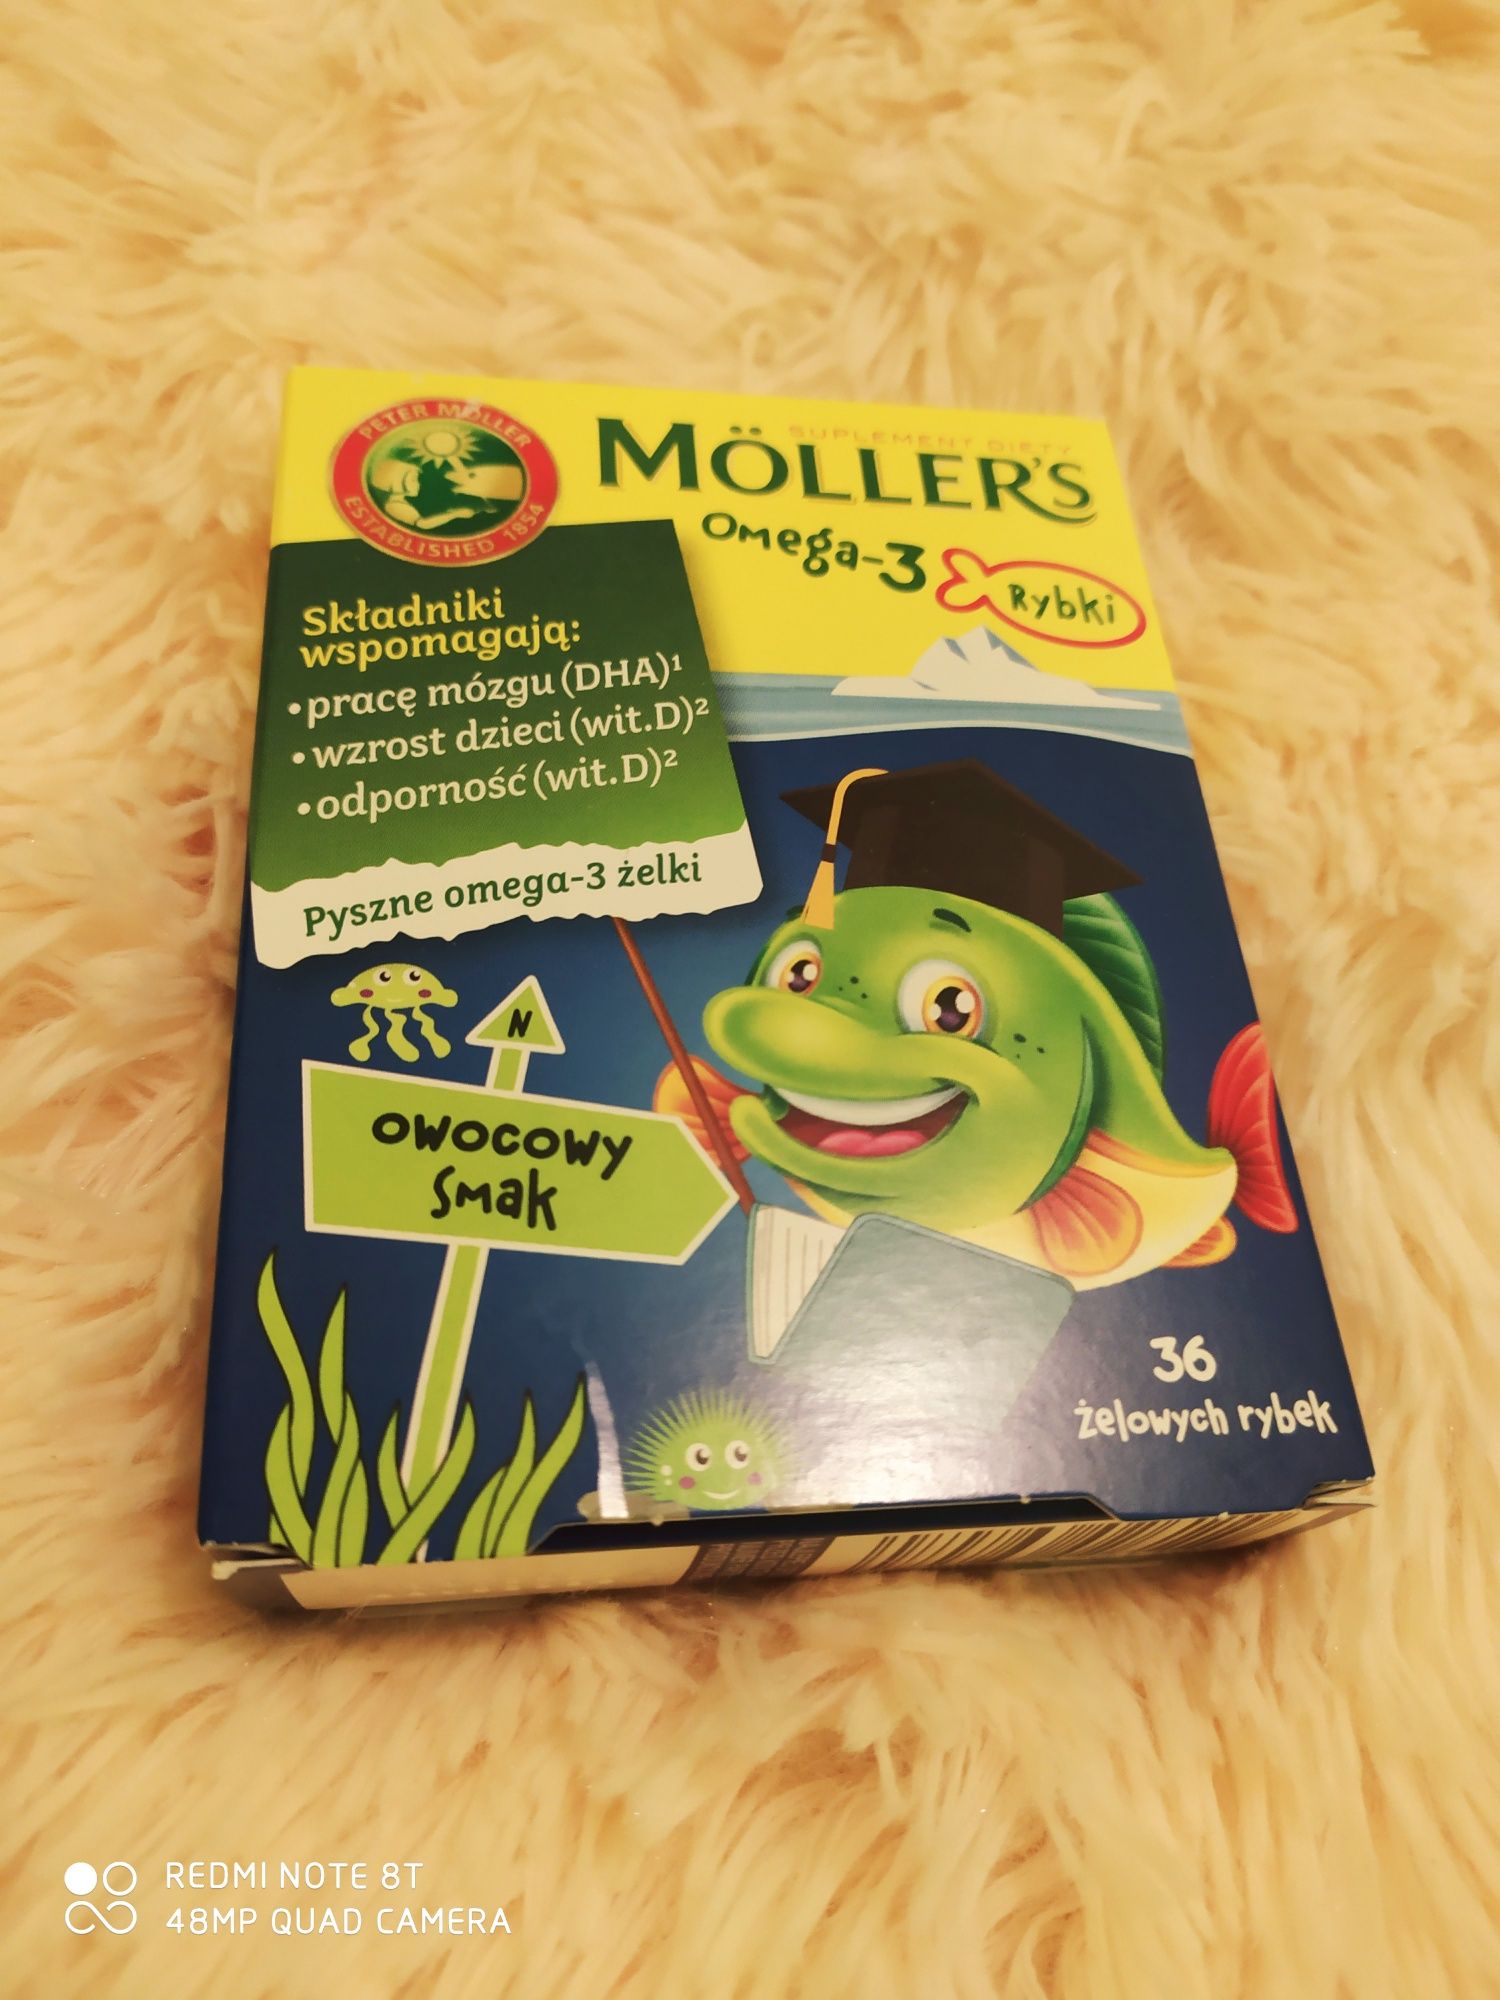 Моллерс омега 3 Möllers вітаміни рибки rybki дієтична добавка БАД